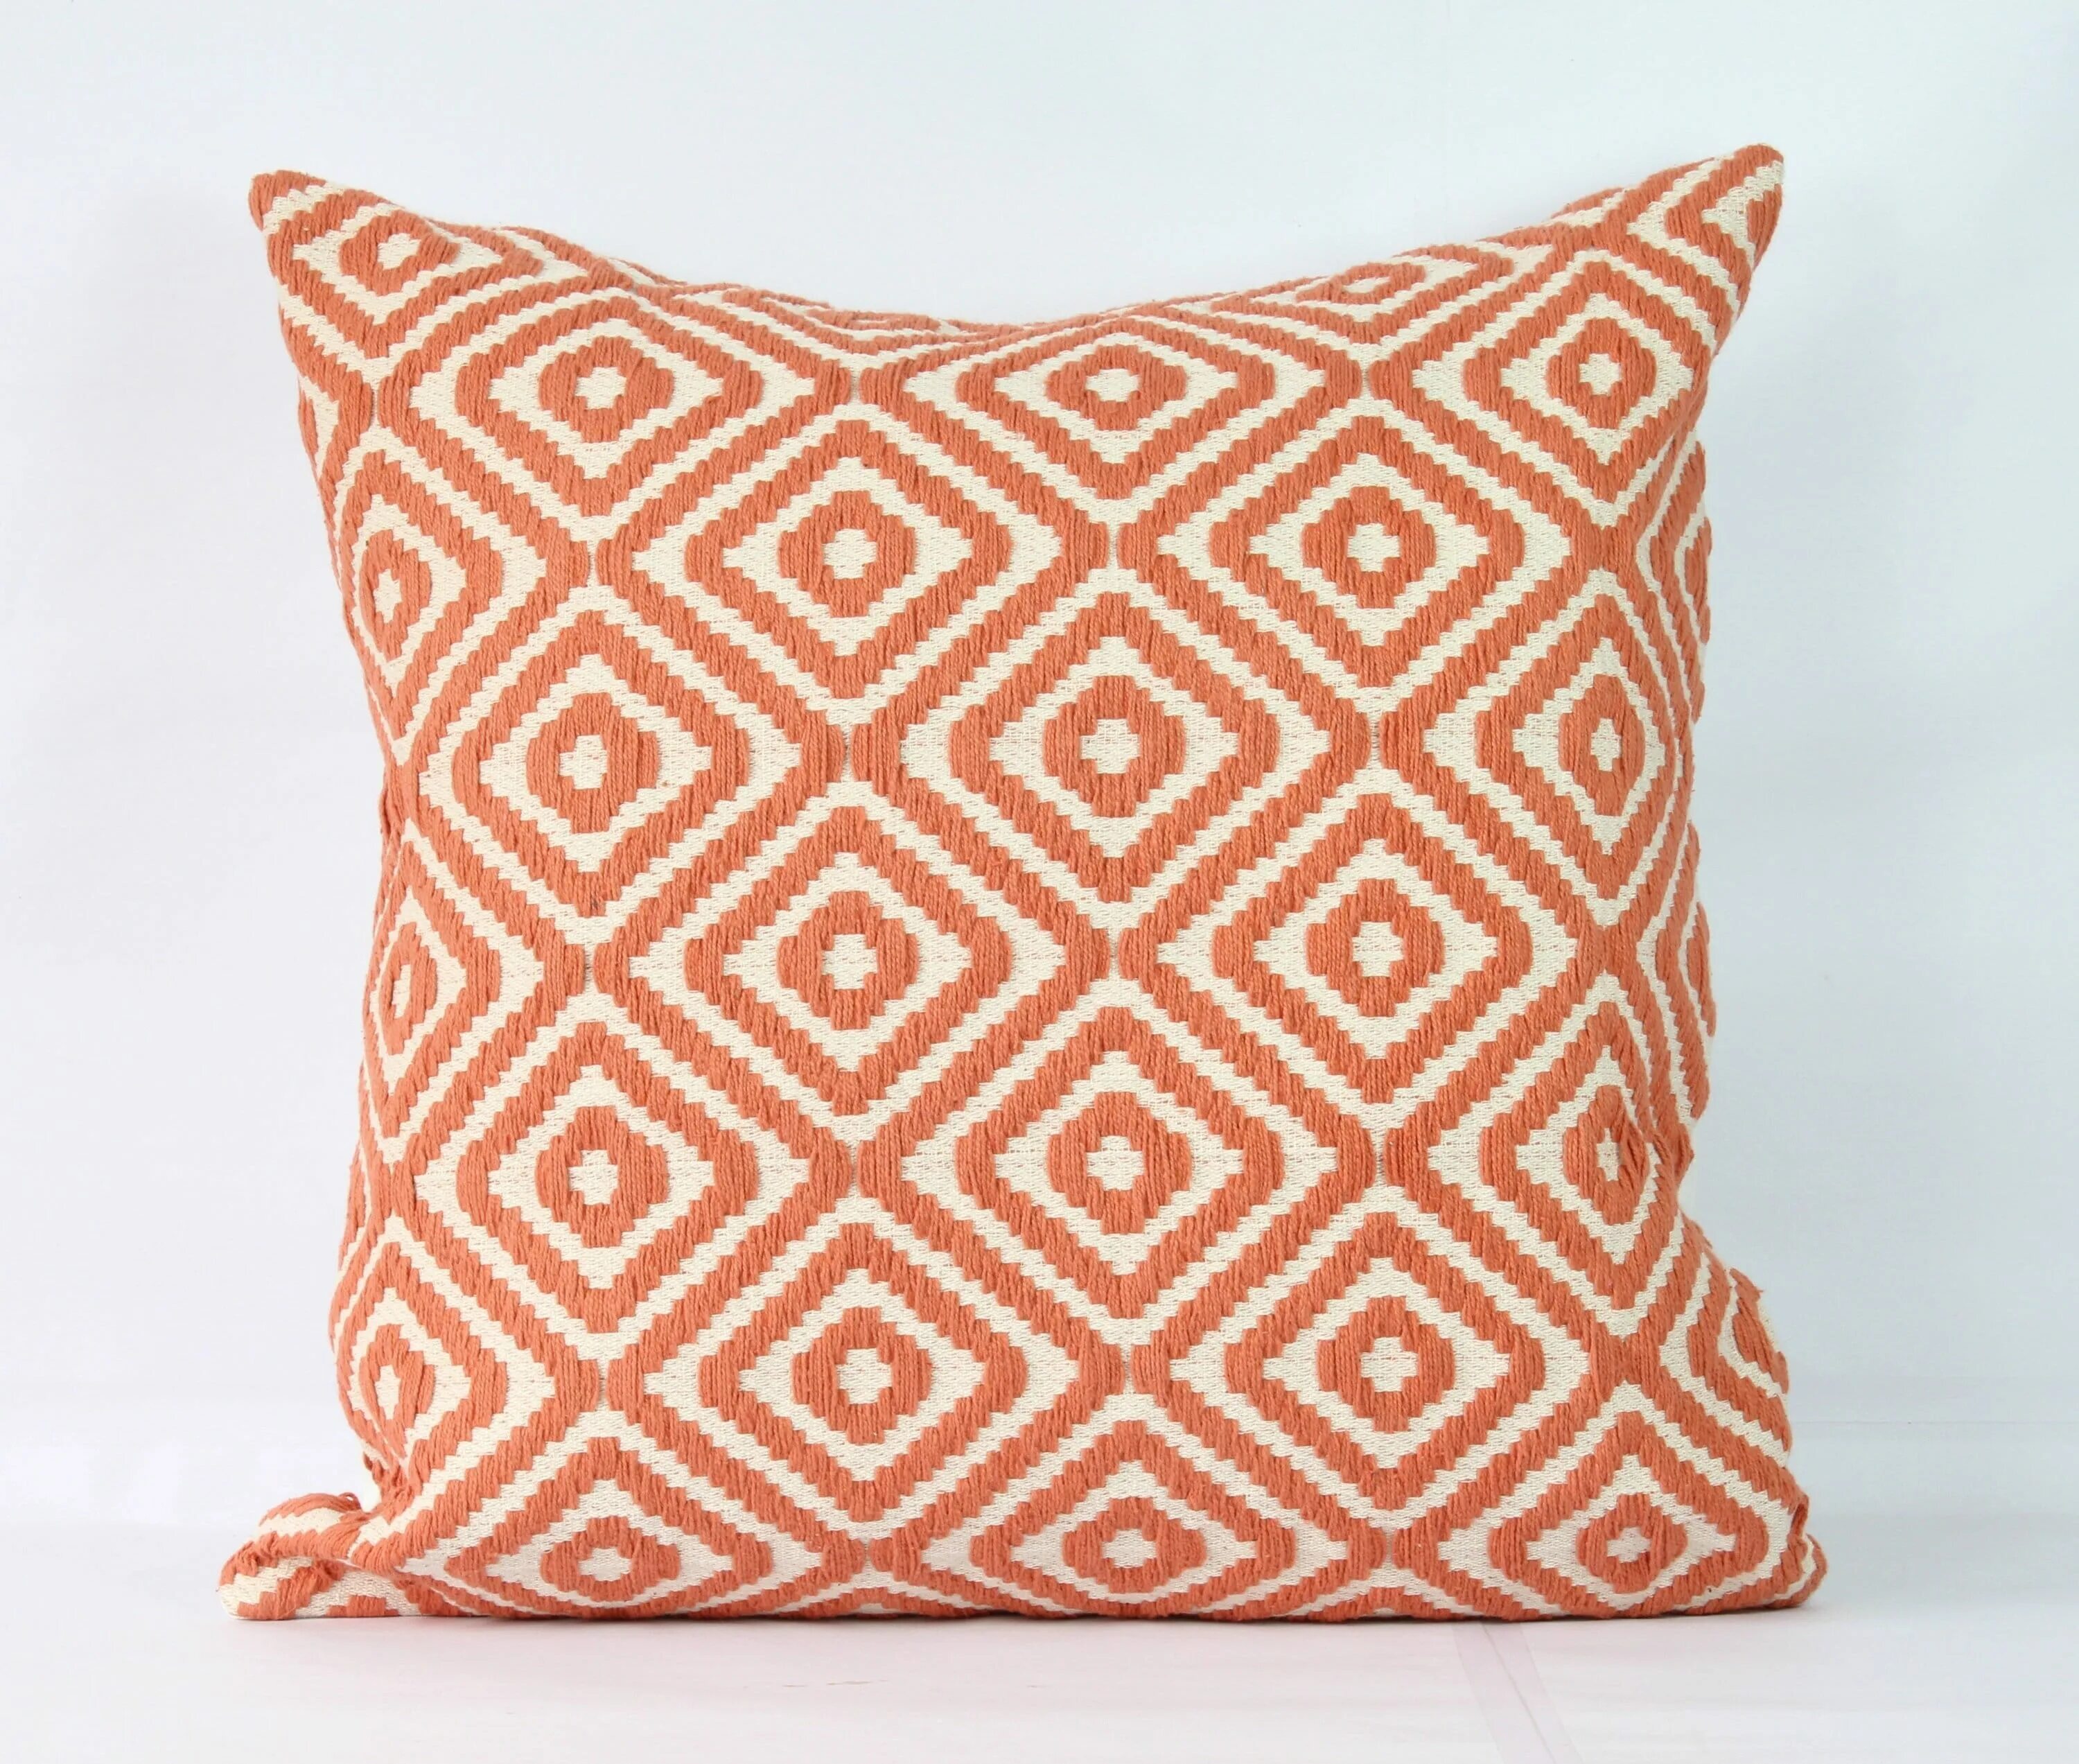 Купить подушки 5. Оранжевая подушка. Коралловые подушки. Подушка оранжевая декоративная. + Подушка бежевый.